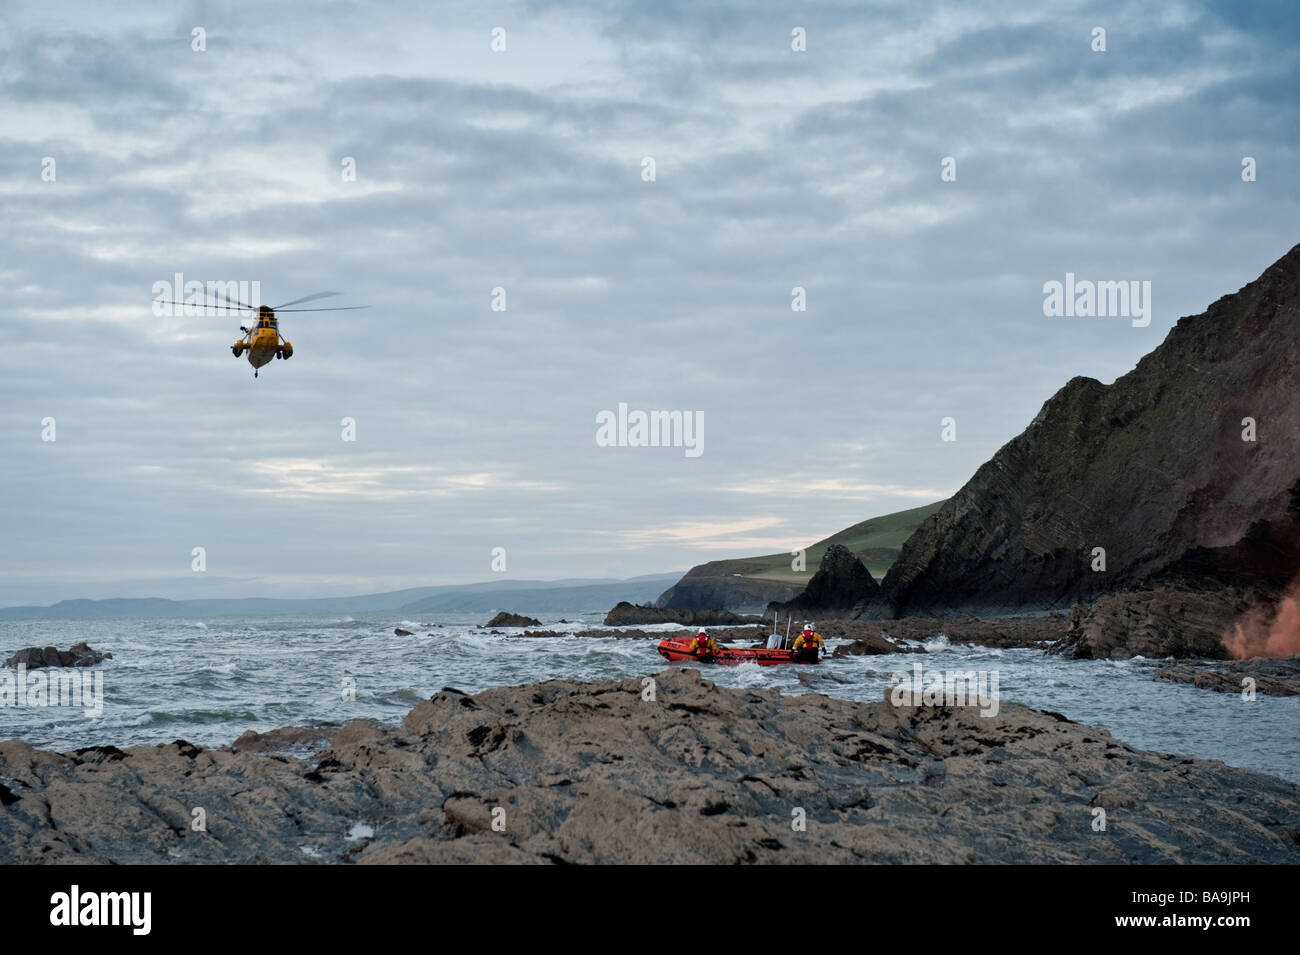 Un hélicoptère Sea King de la RNLI lifeboat côtière et le sauvetage d'un jeune homme qui avait perdu sa place sur les falaises à l'ouest du pays de Galles Aberystwyth UK Banque D'Images